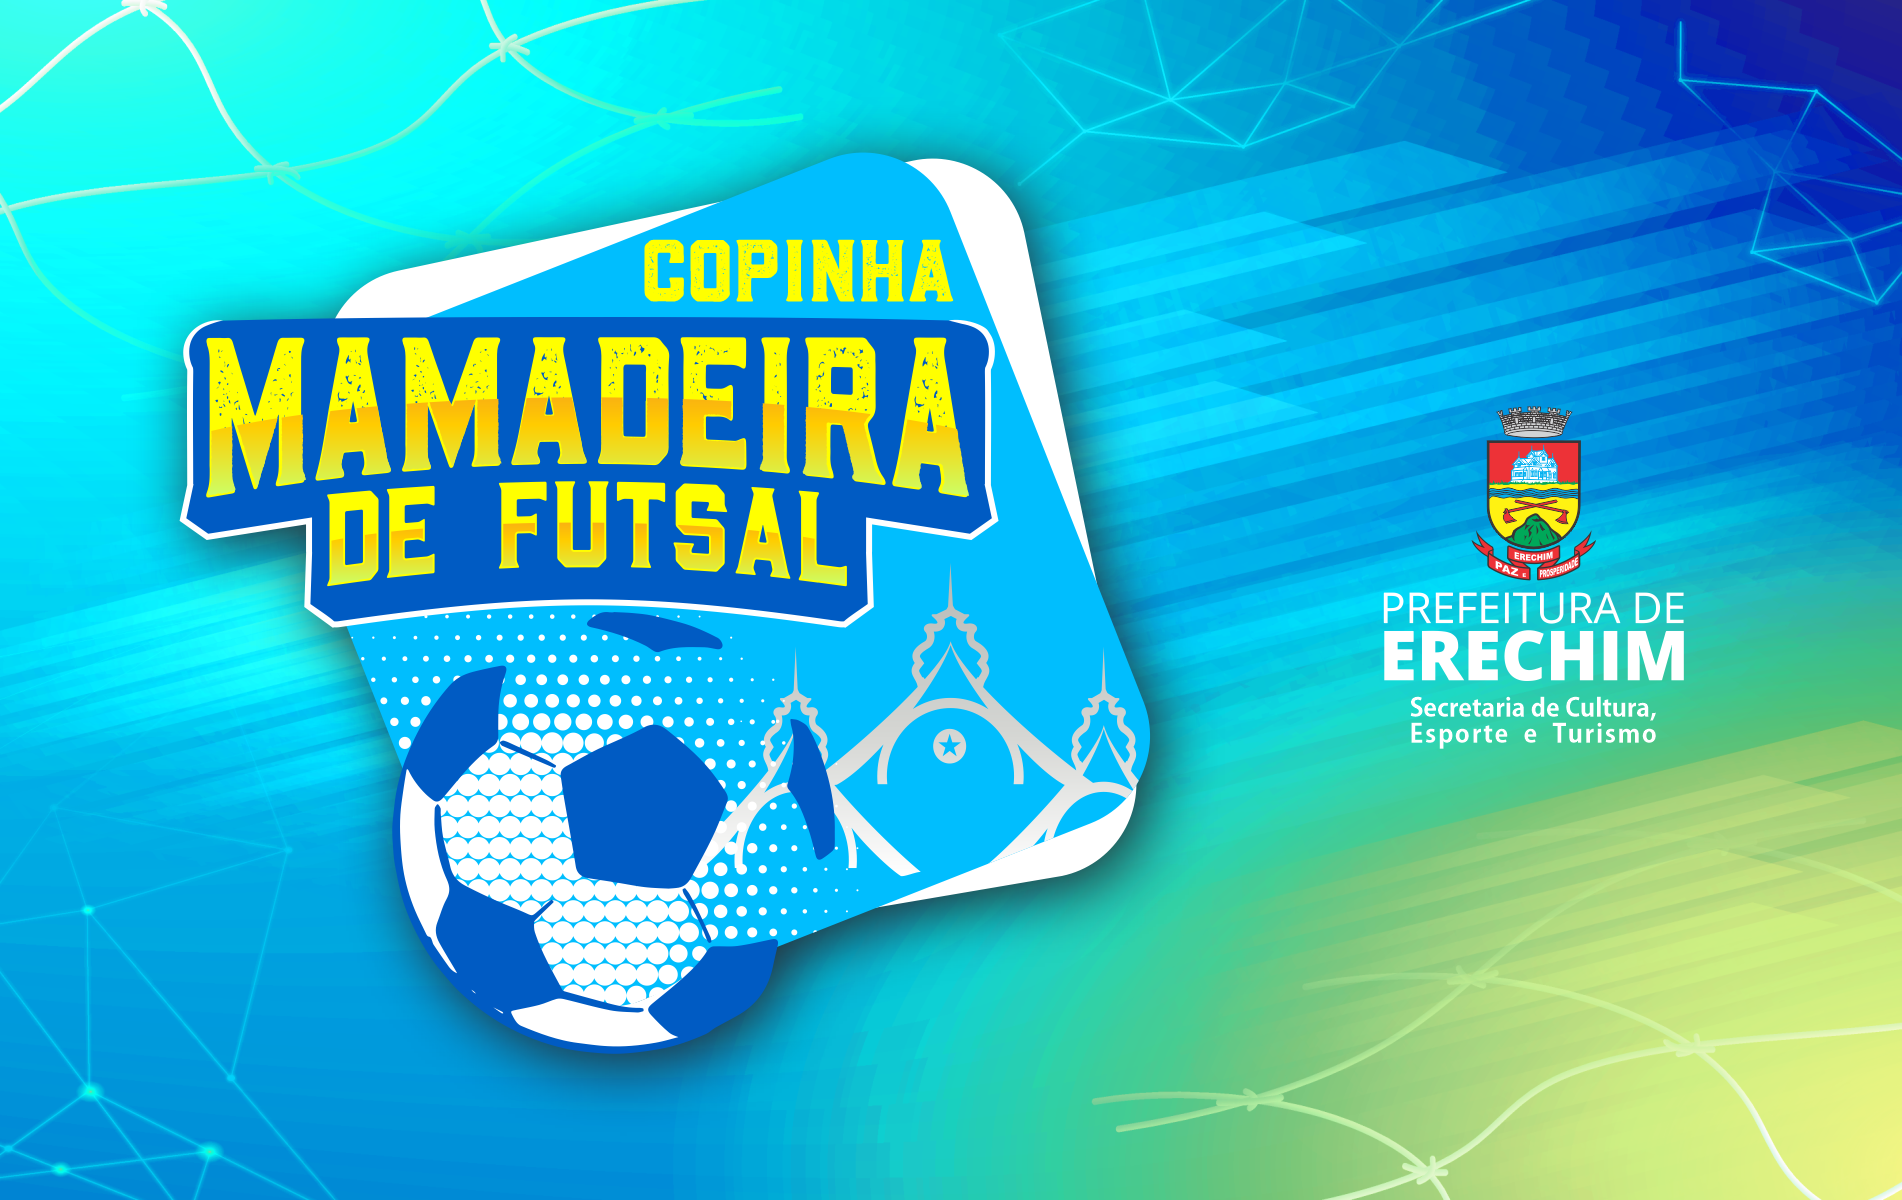  Inscri?es abertas para a Copinha Mamadeira de Futsal 2021